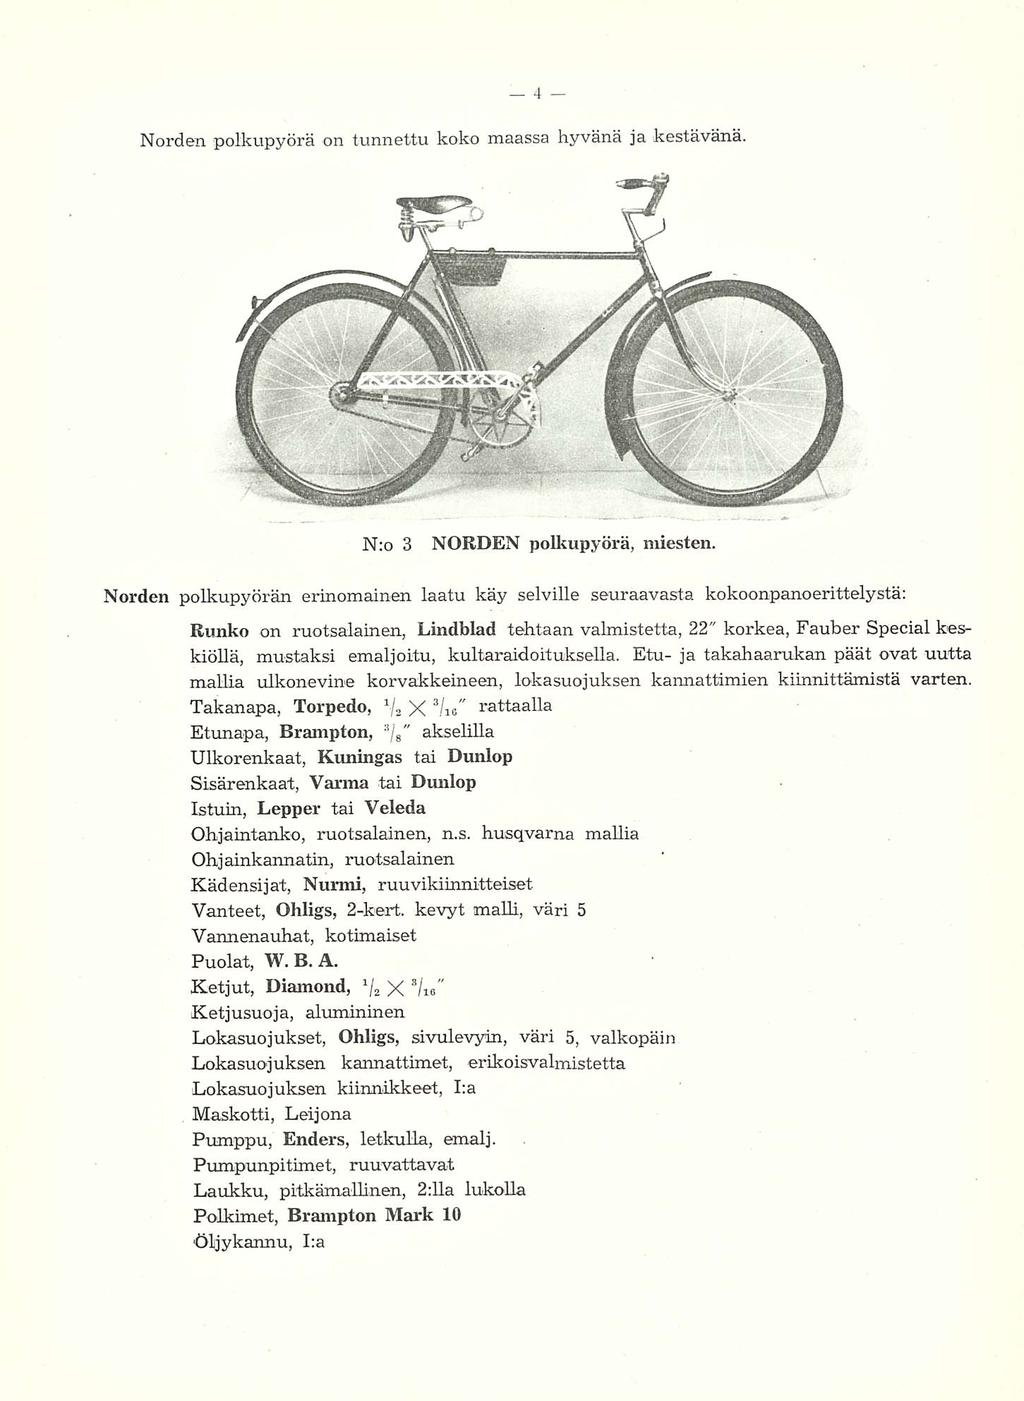 Norden polkupyörä on tunnettu koko maassa hyvänä ja kestävänä. N:o 3 NORDEN polkupyörä, miesten.